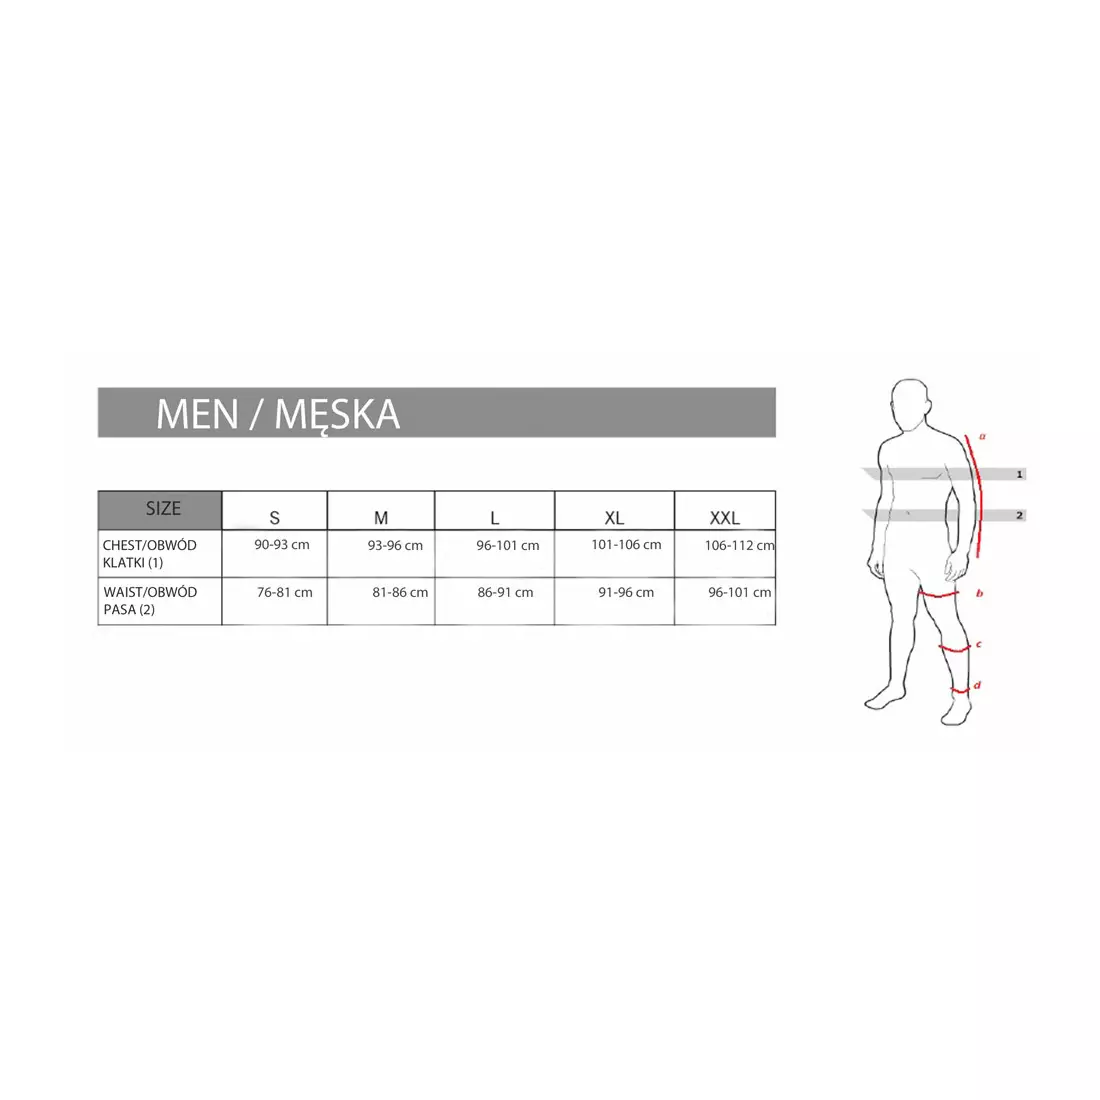 Pantaloni scurți de ciclism 3/4 pentru bărbați FDX 1600, negri cu cusături roșii